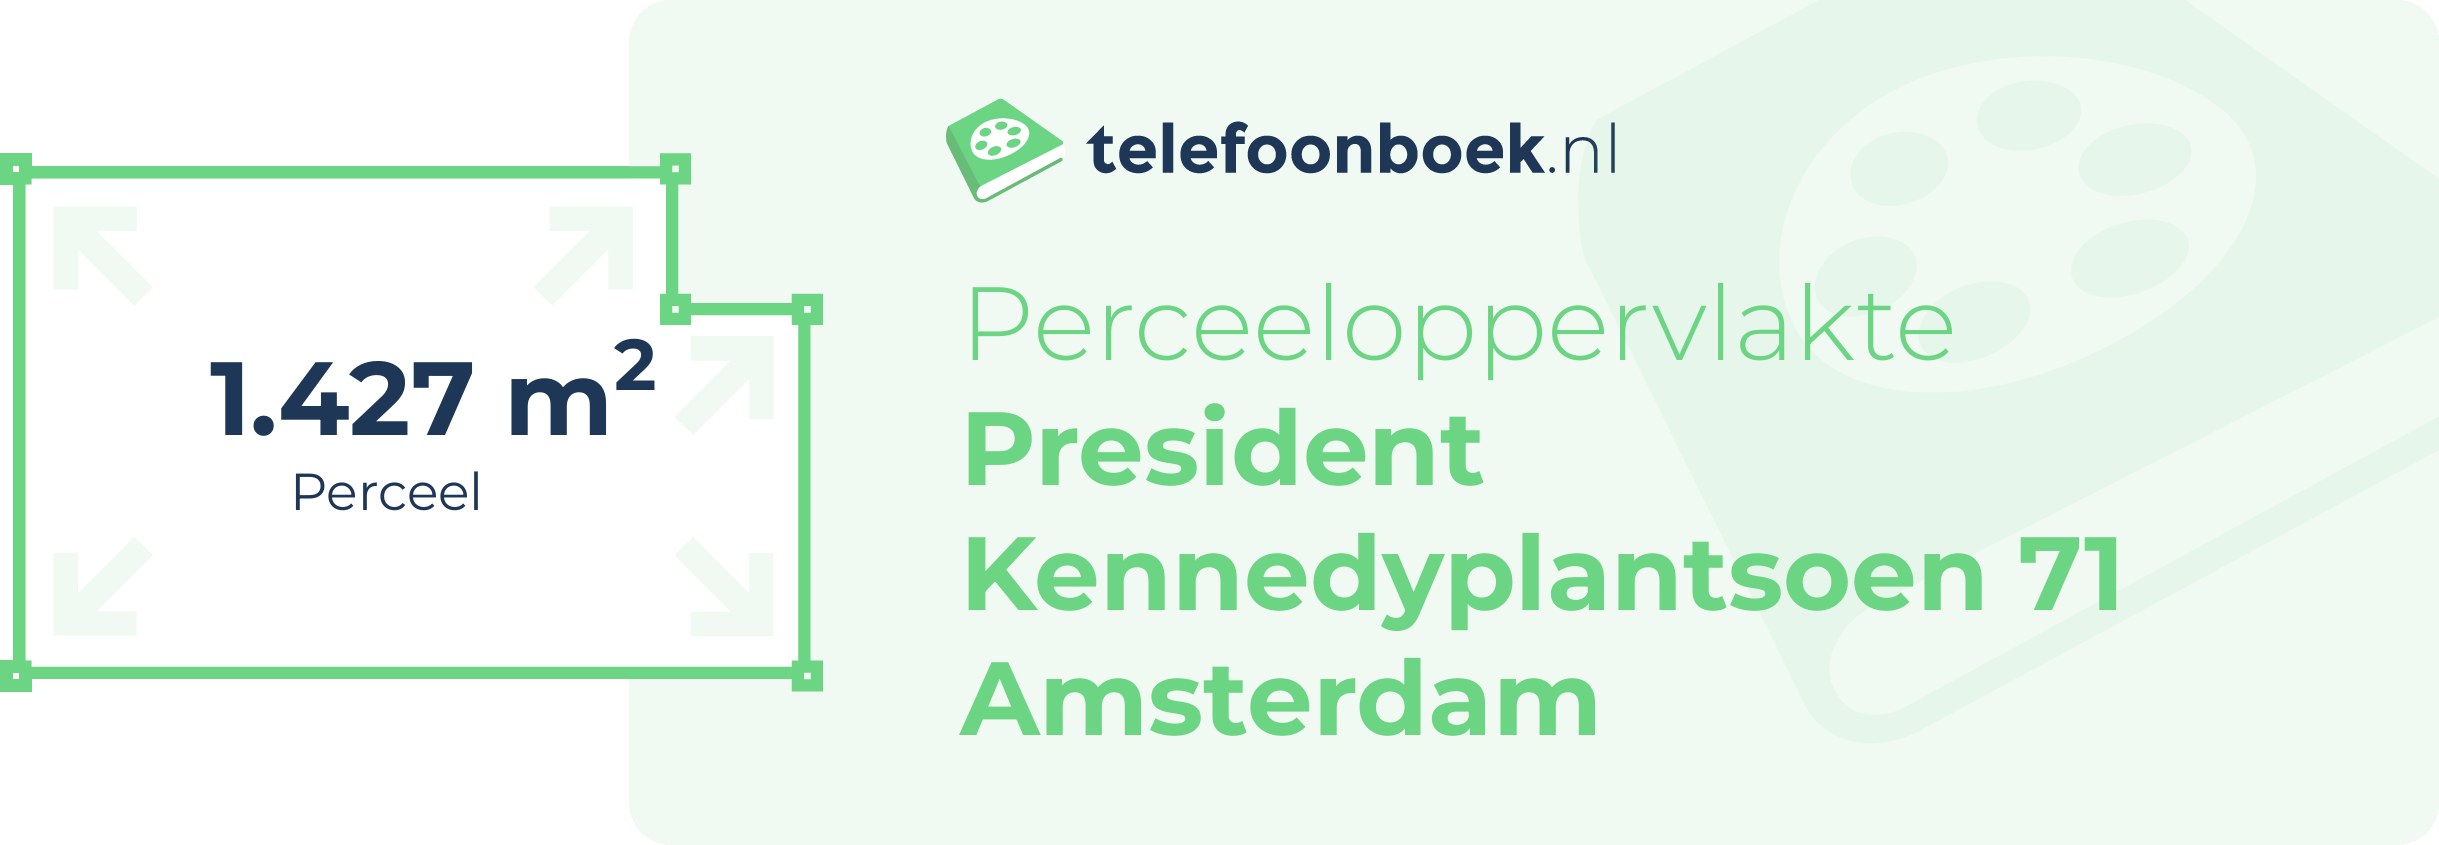 Perceeloppervlakte President Kennedyplantsoen 71 Amsterdam